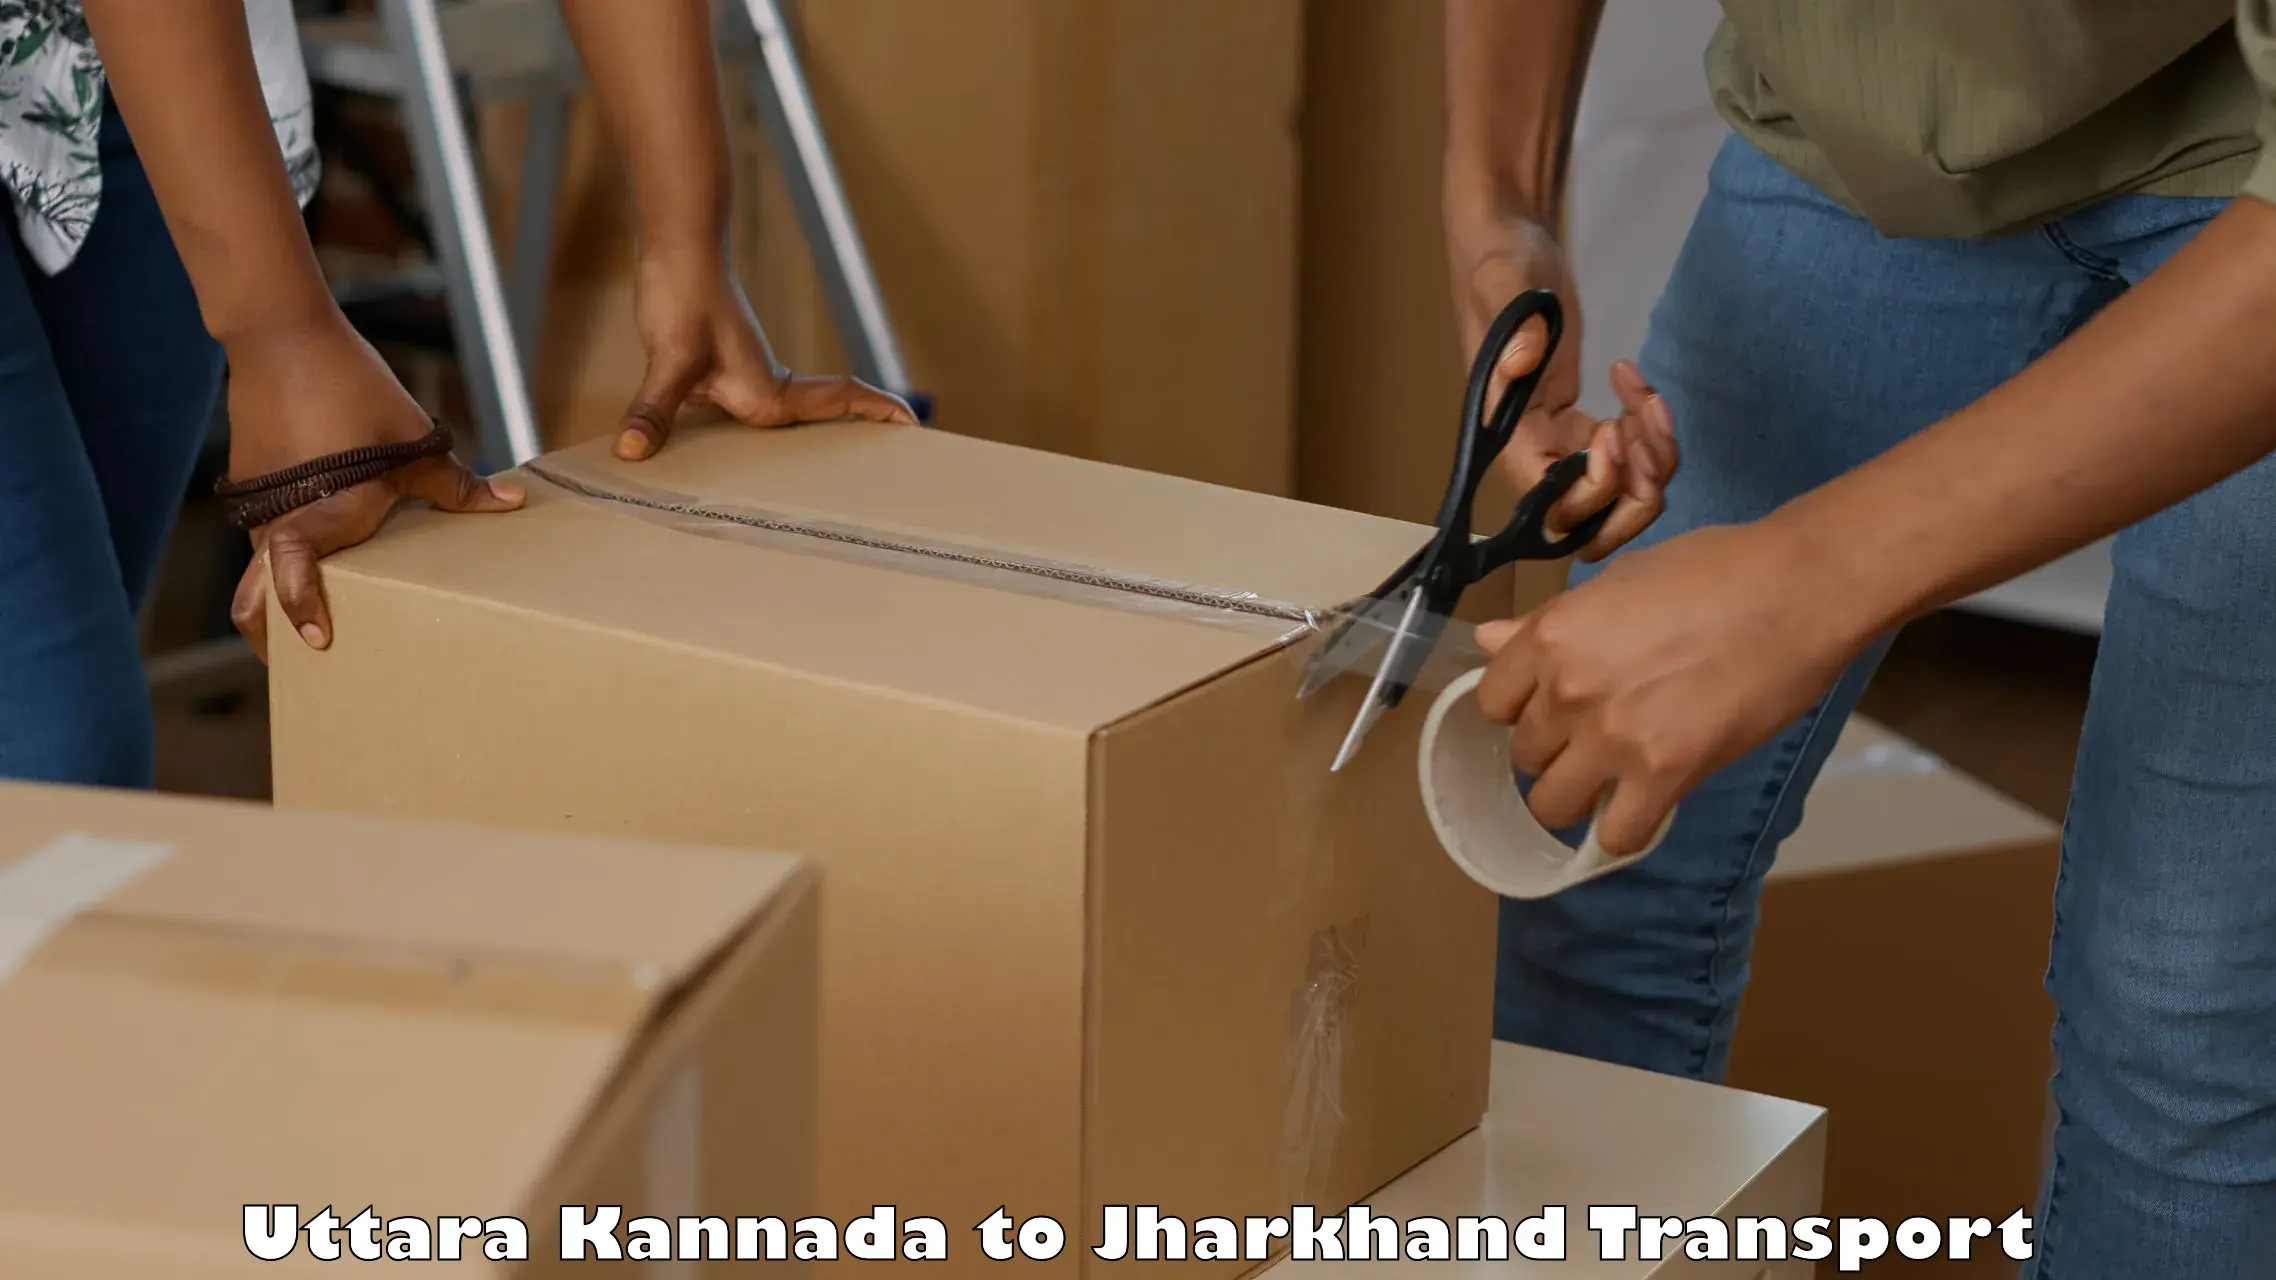 Shipping services Uttara Kannada to Bagodar